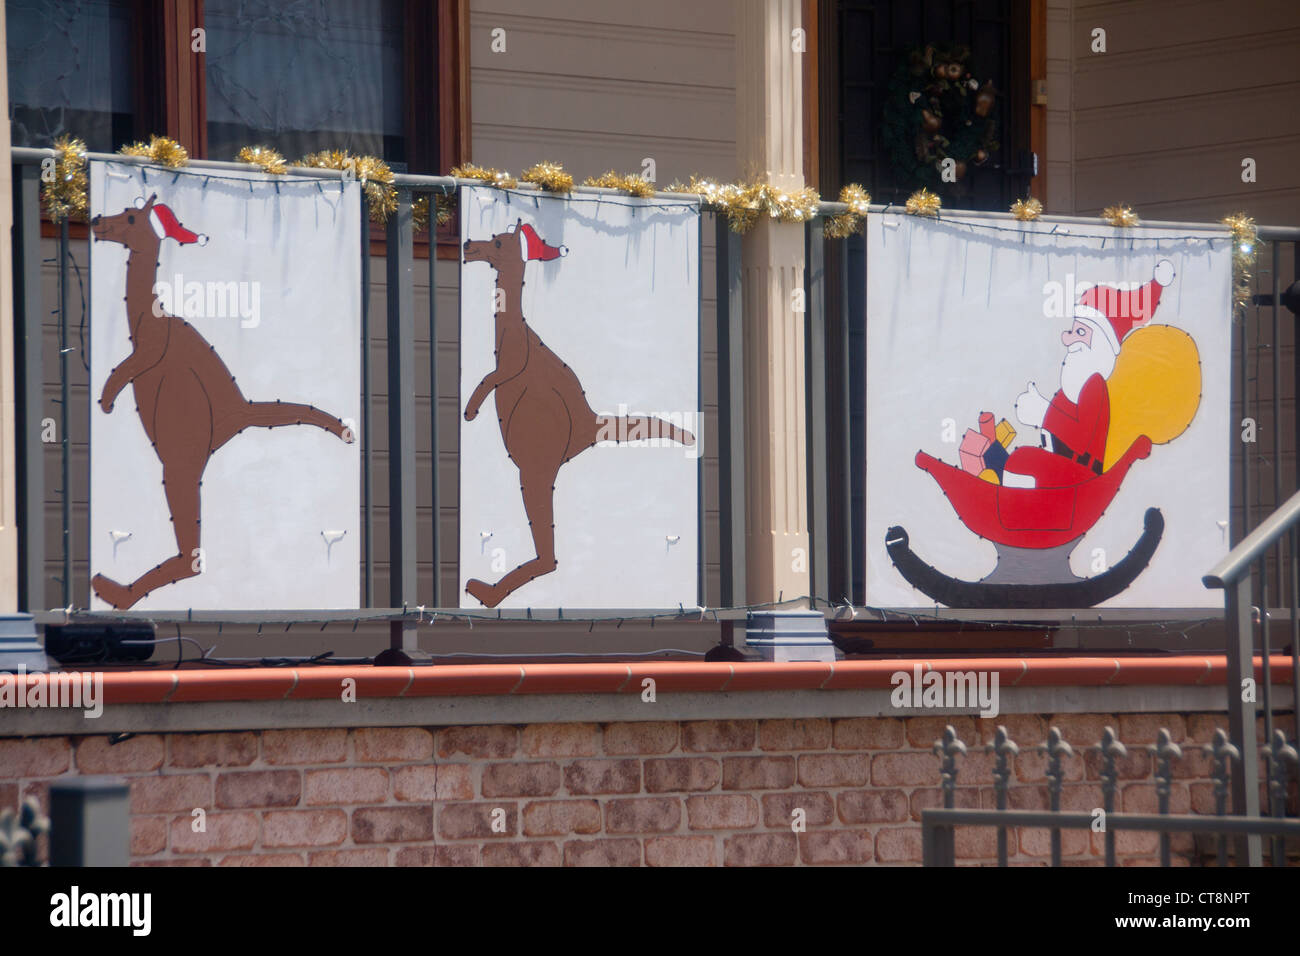 Weihnachten Malerei außerhalb Haus mit zwei Kängurus ziehen Santa Claus / Weihnachtsmann in seinem Schlitten Newcastle NSW Australia Stockfoto